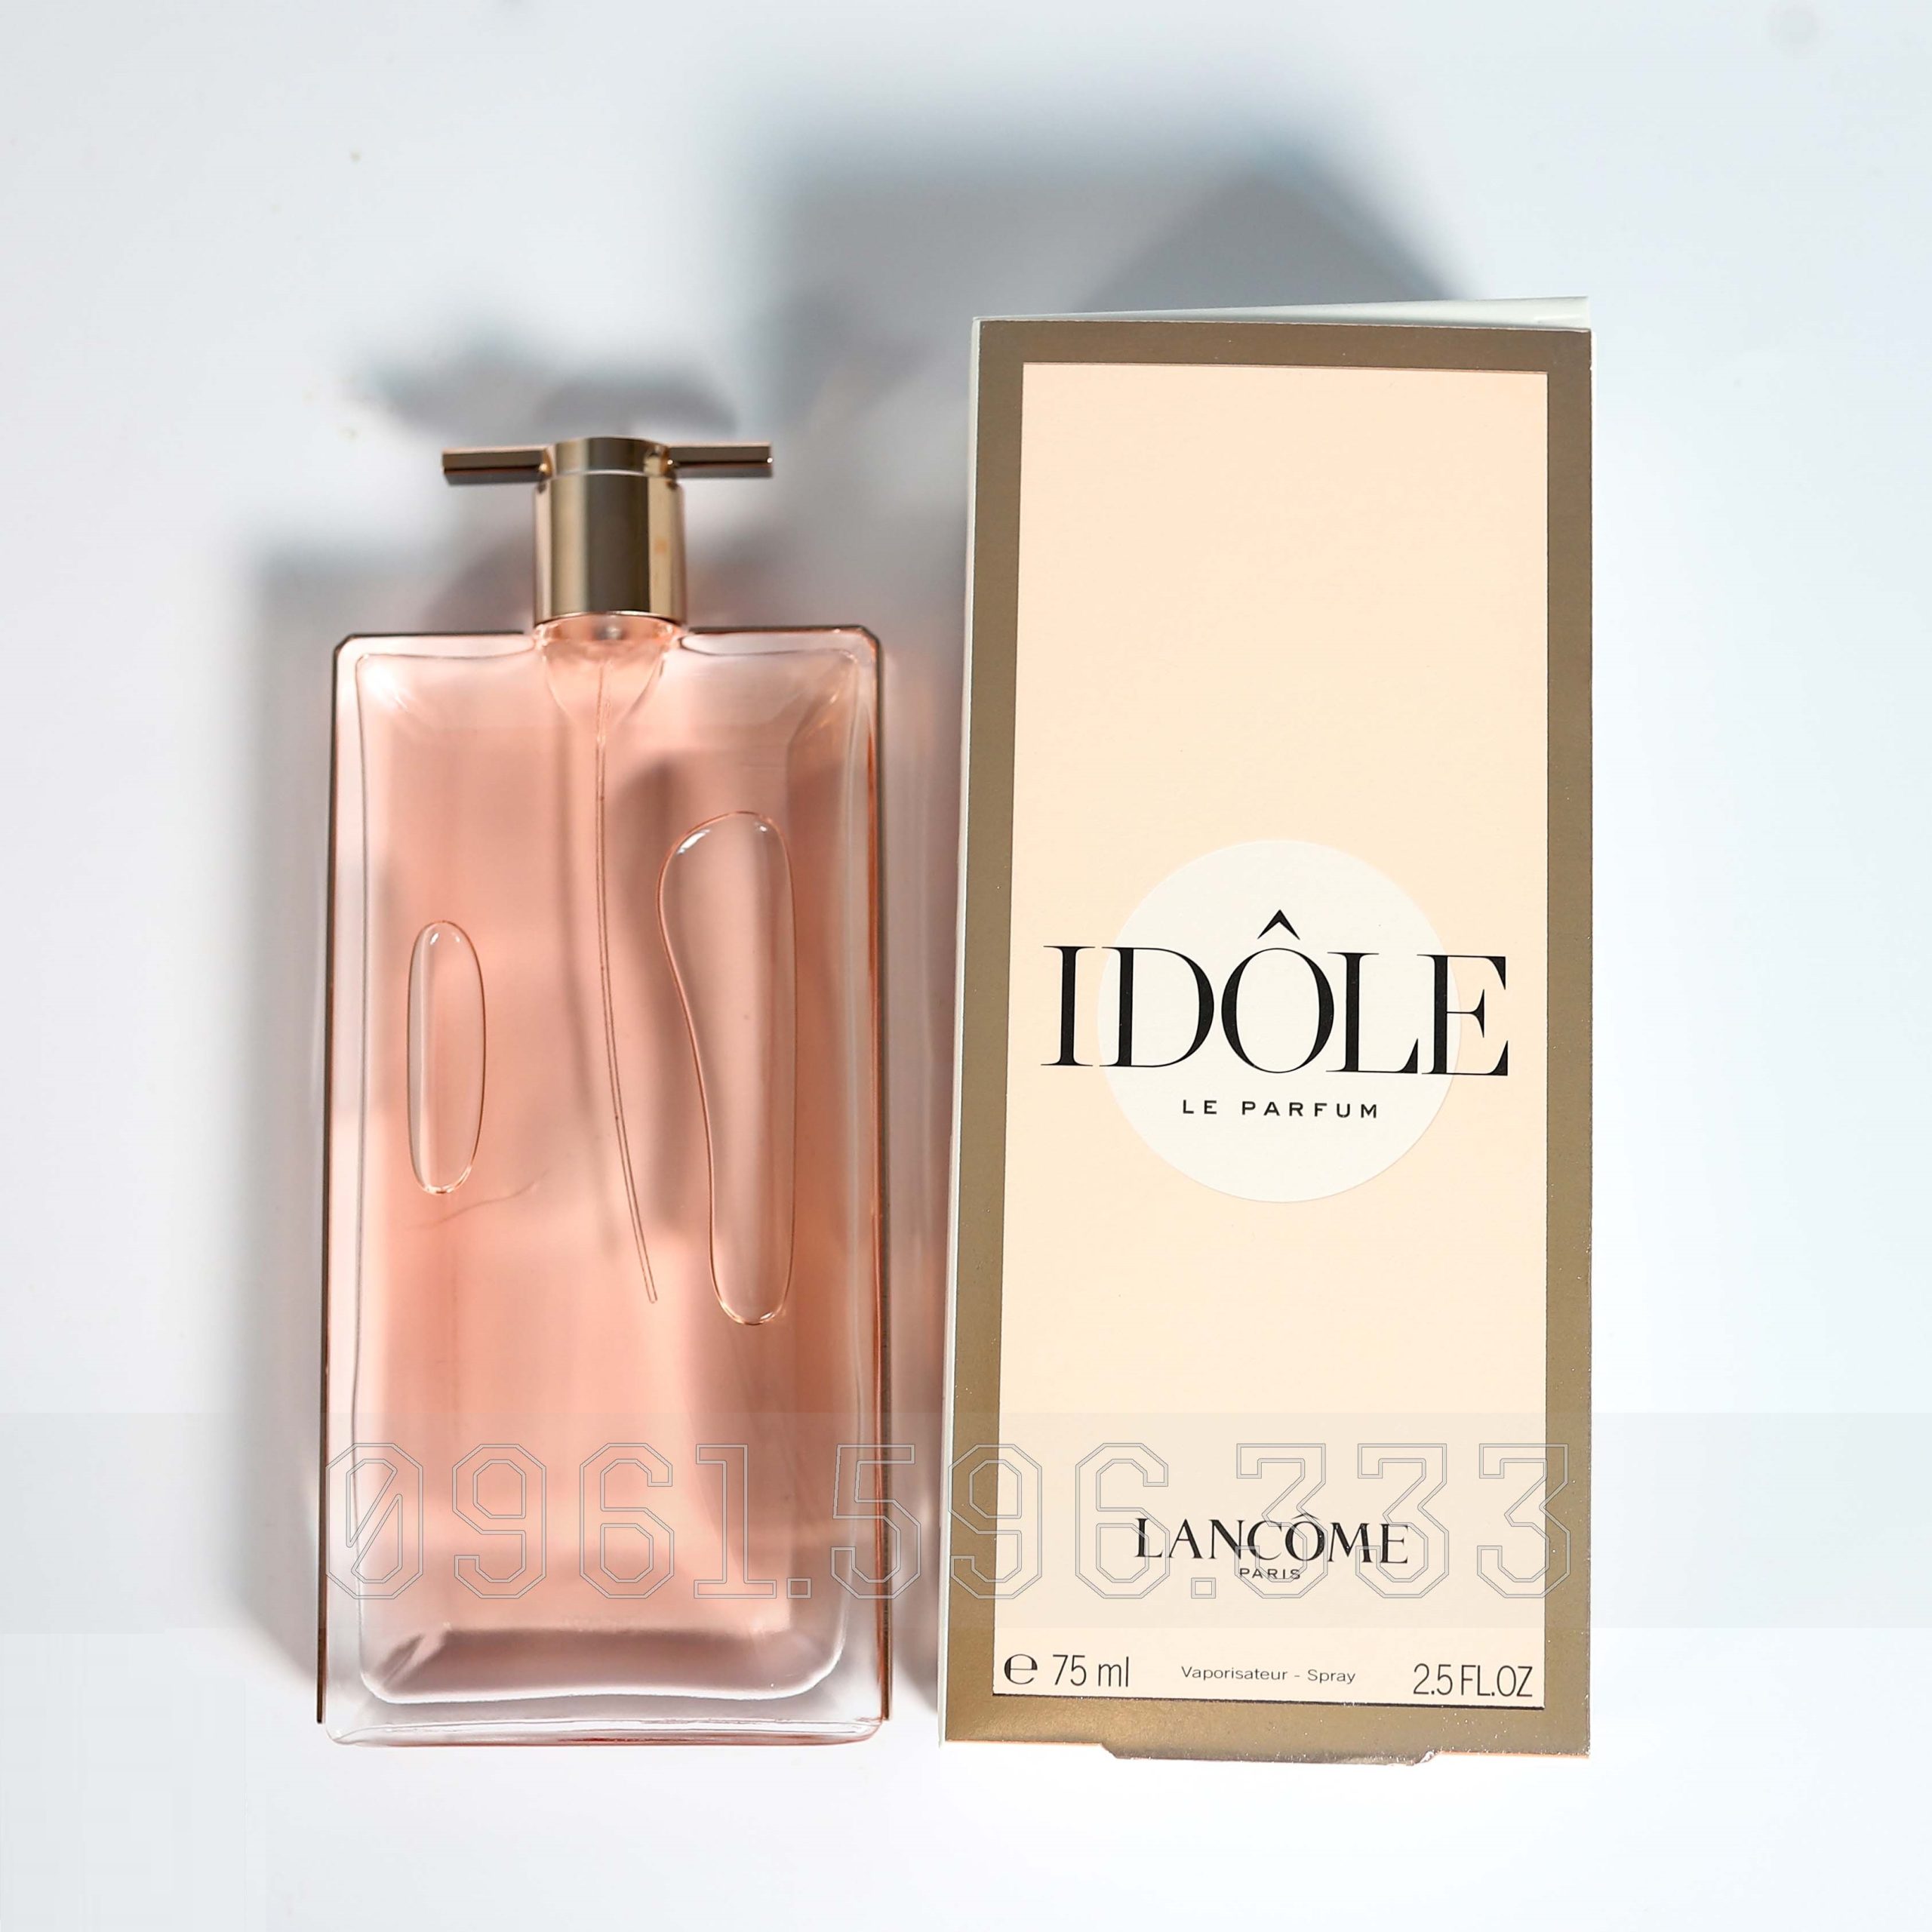 Lancome-Idole-Le-Grand-Parfum-tai-ha-noi